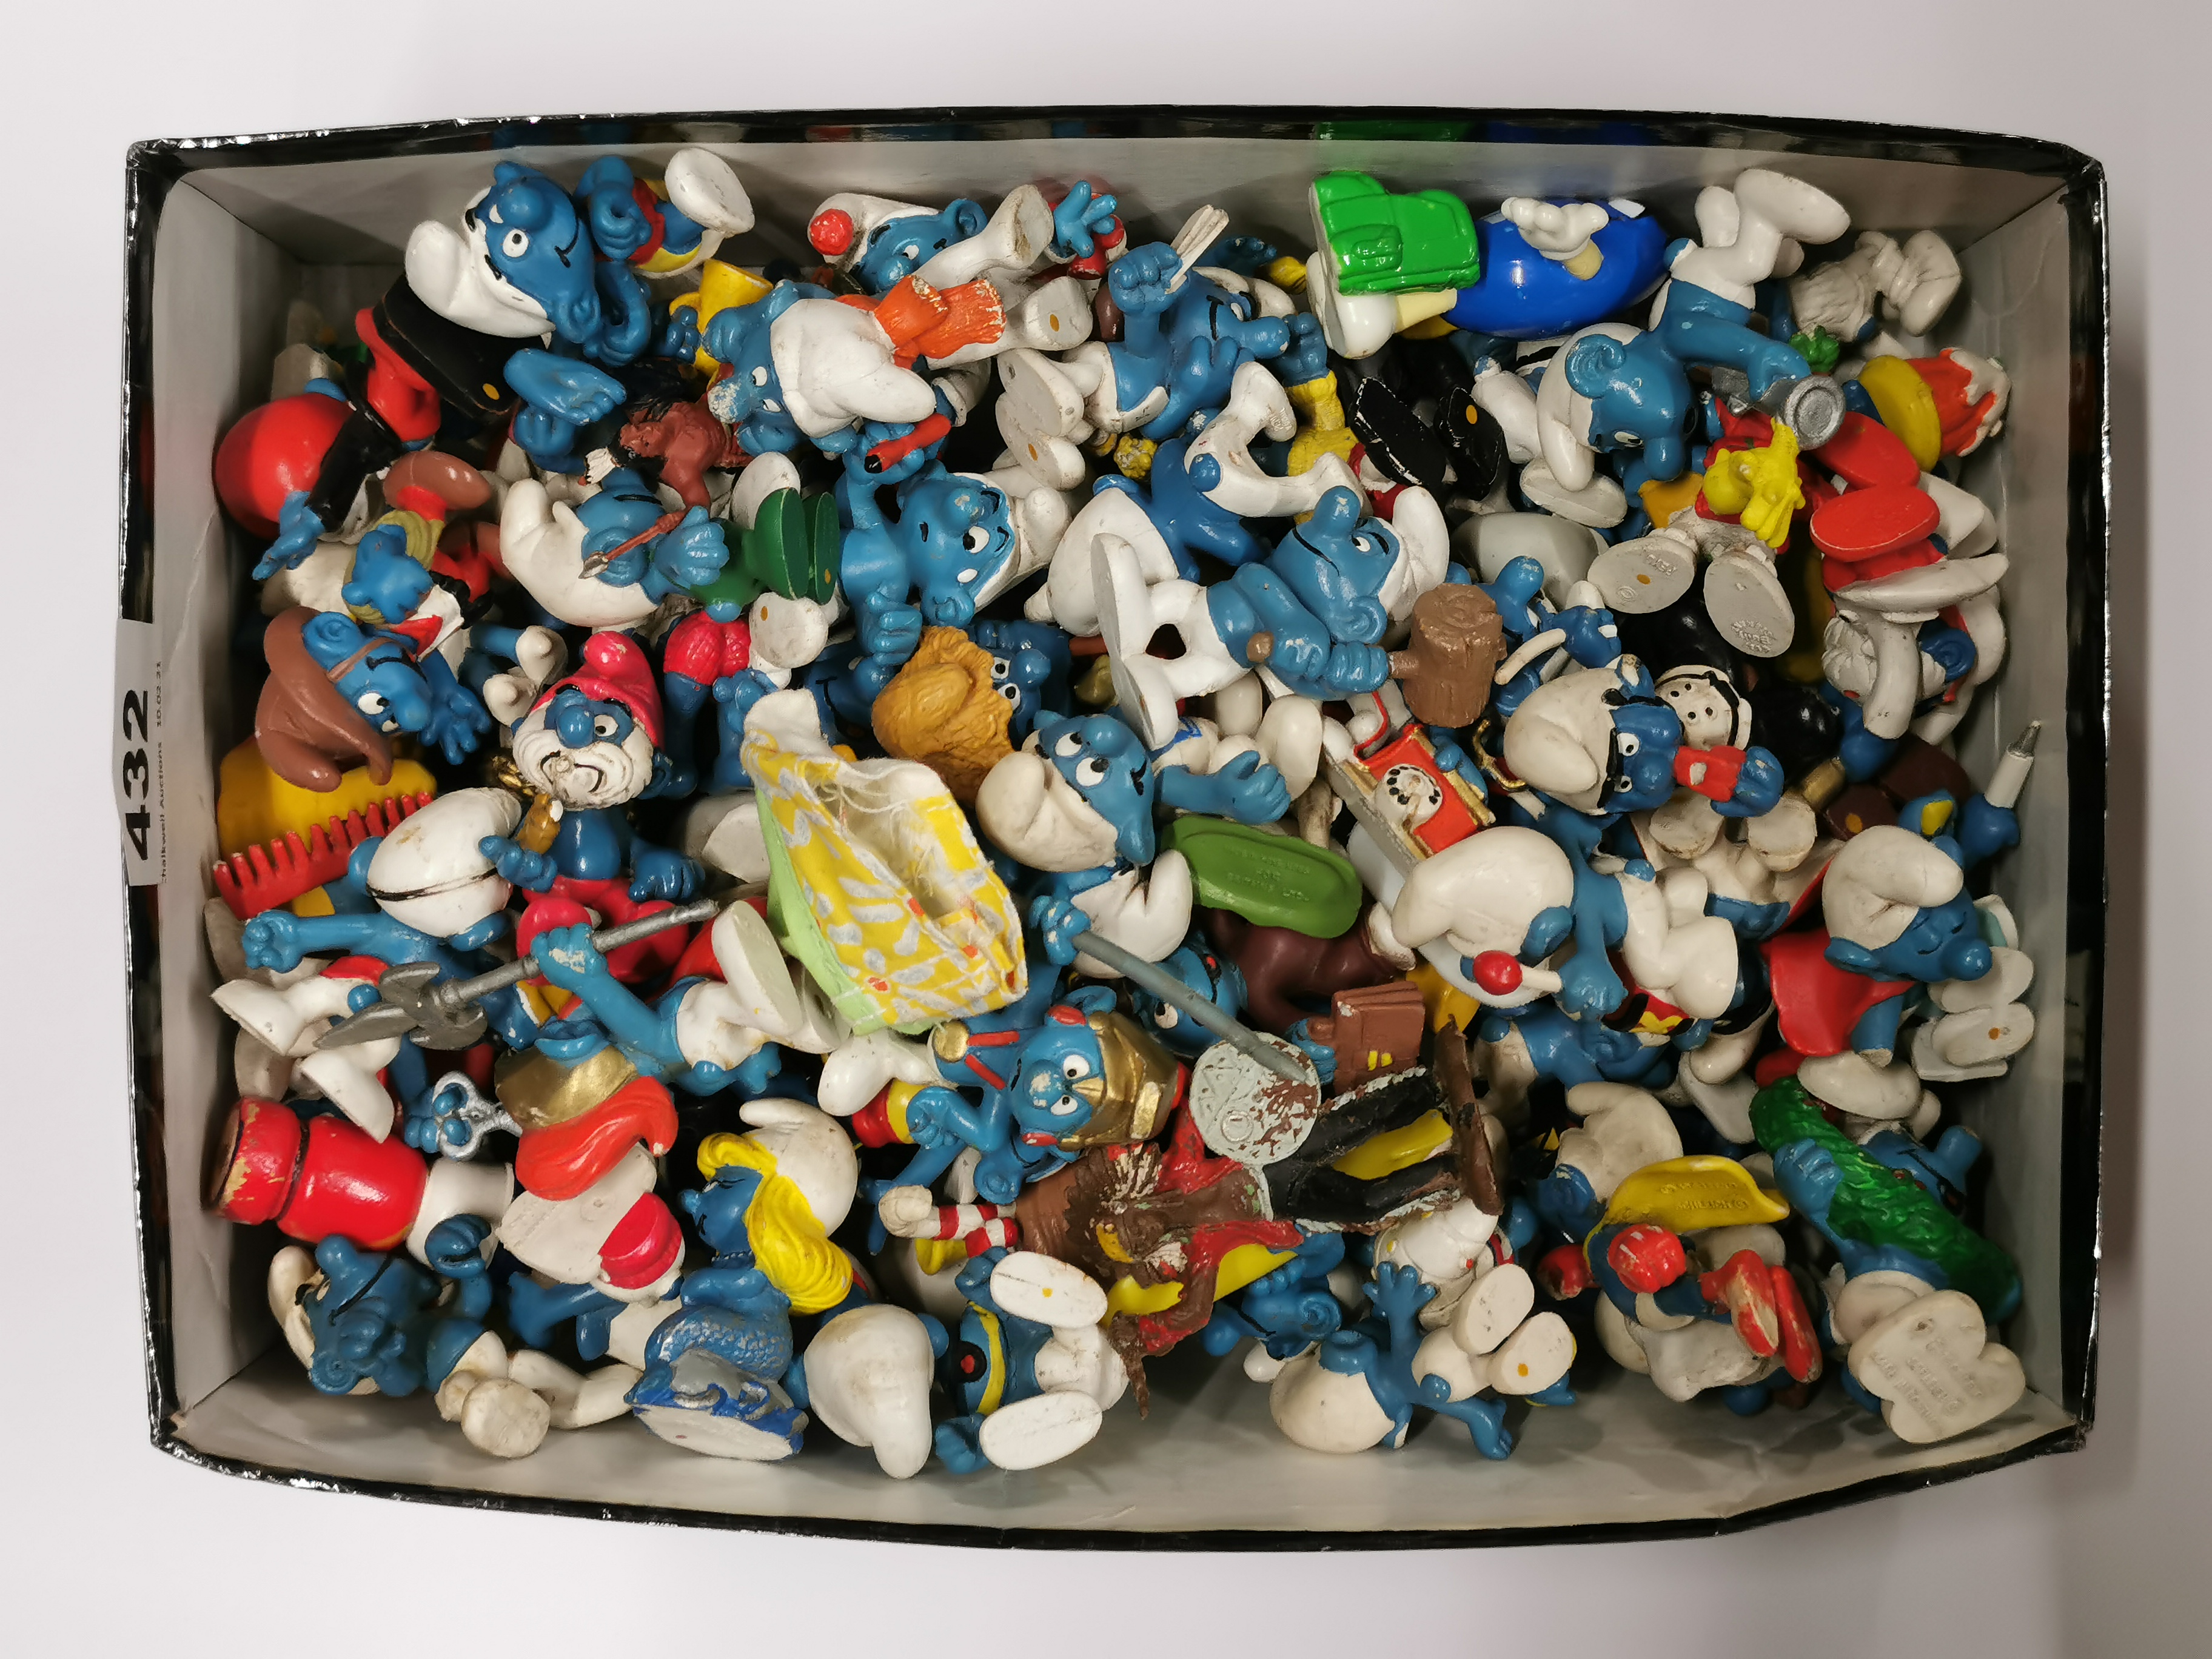 A box of original Smurf toys.